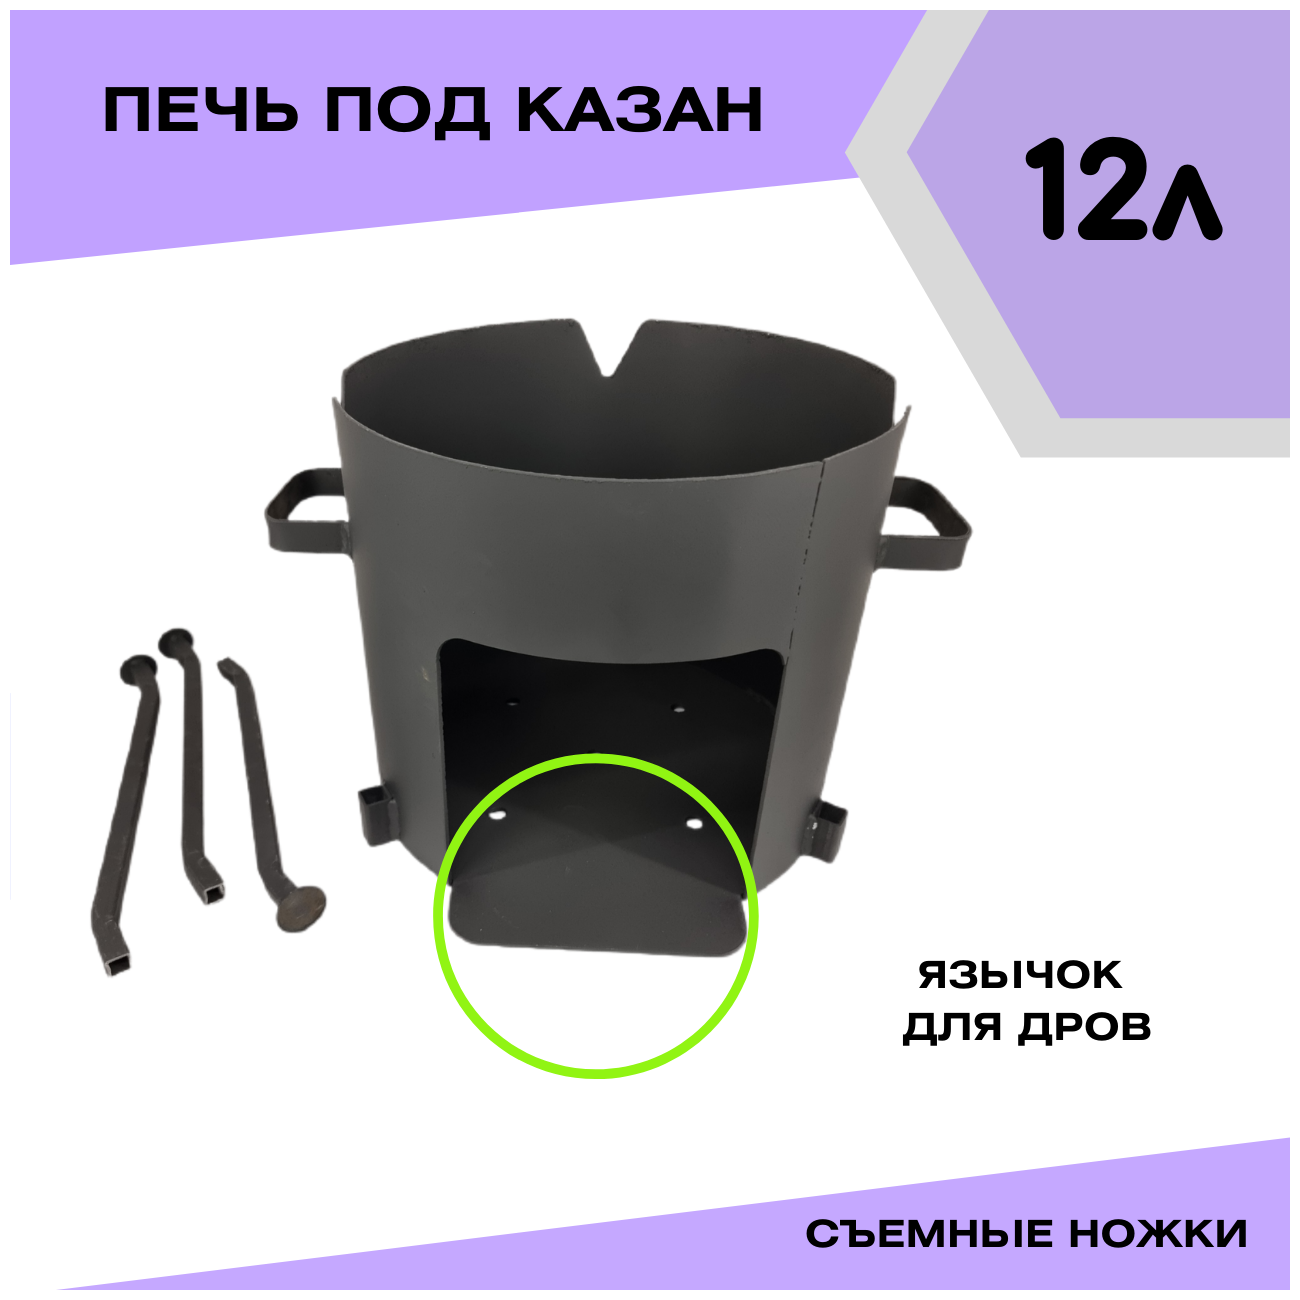 Печка для казана чугунного 12 литров со съемными ножками Svargan